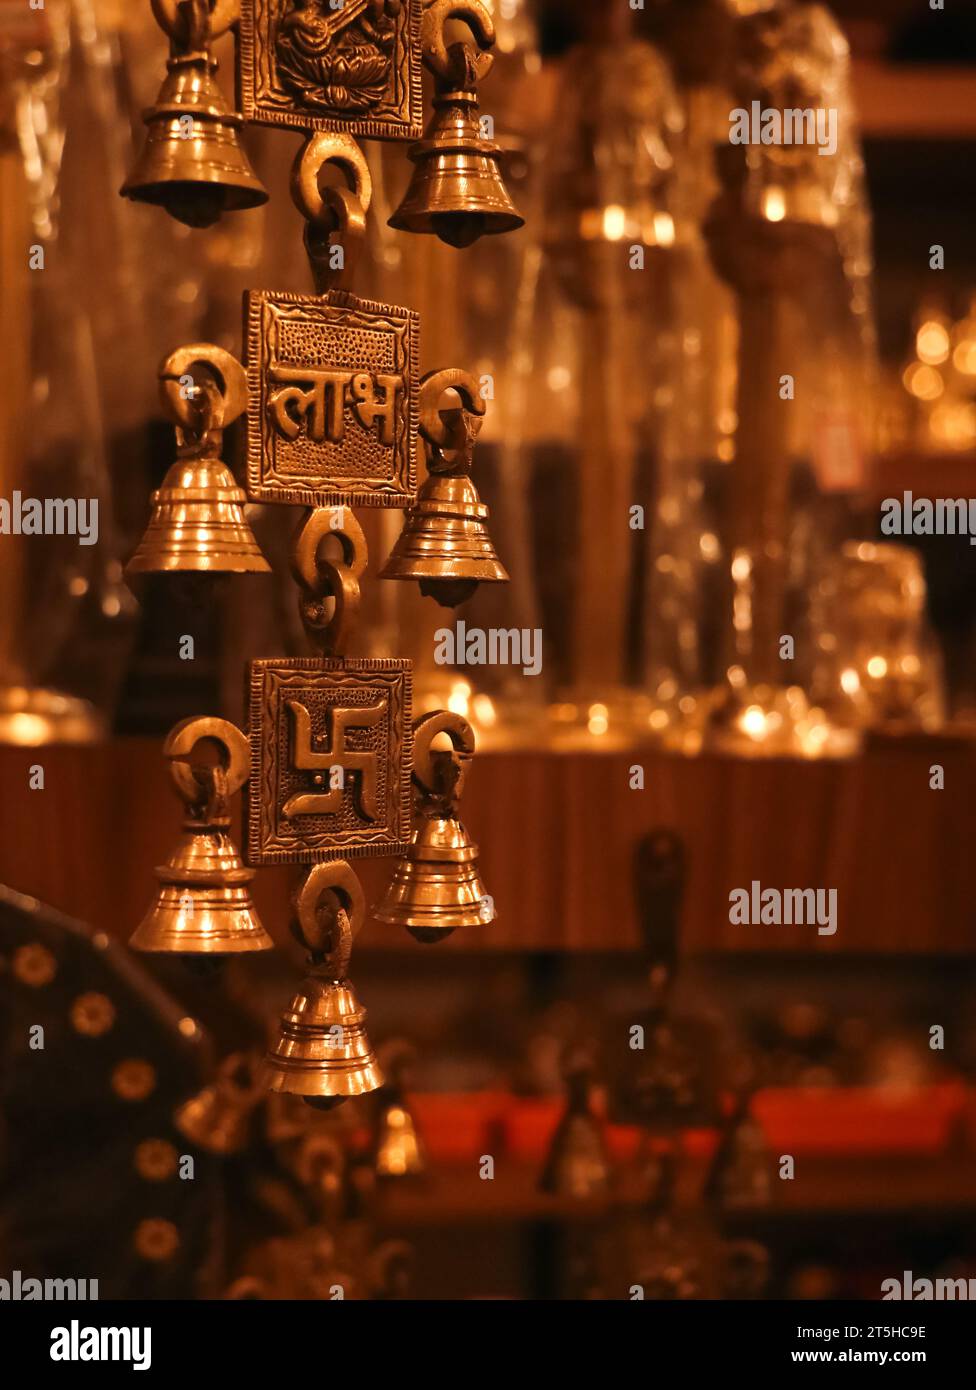 Alte, Souvenir hängende Messingglocken mit religiösen Symbolen aus einem antiken indischen Souvenirladen Stockfoto